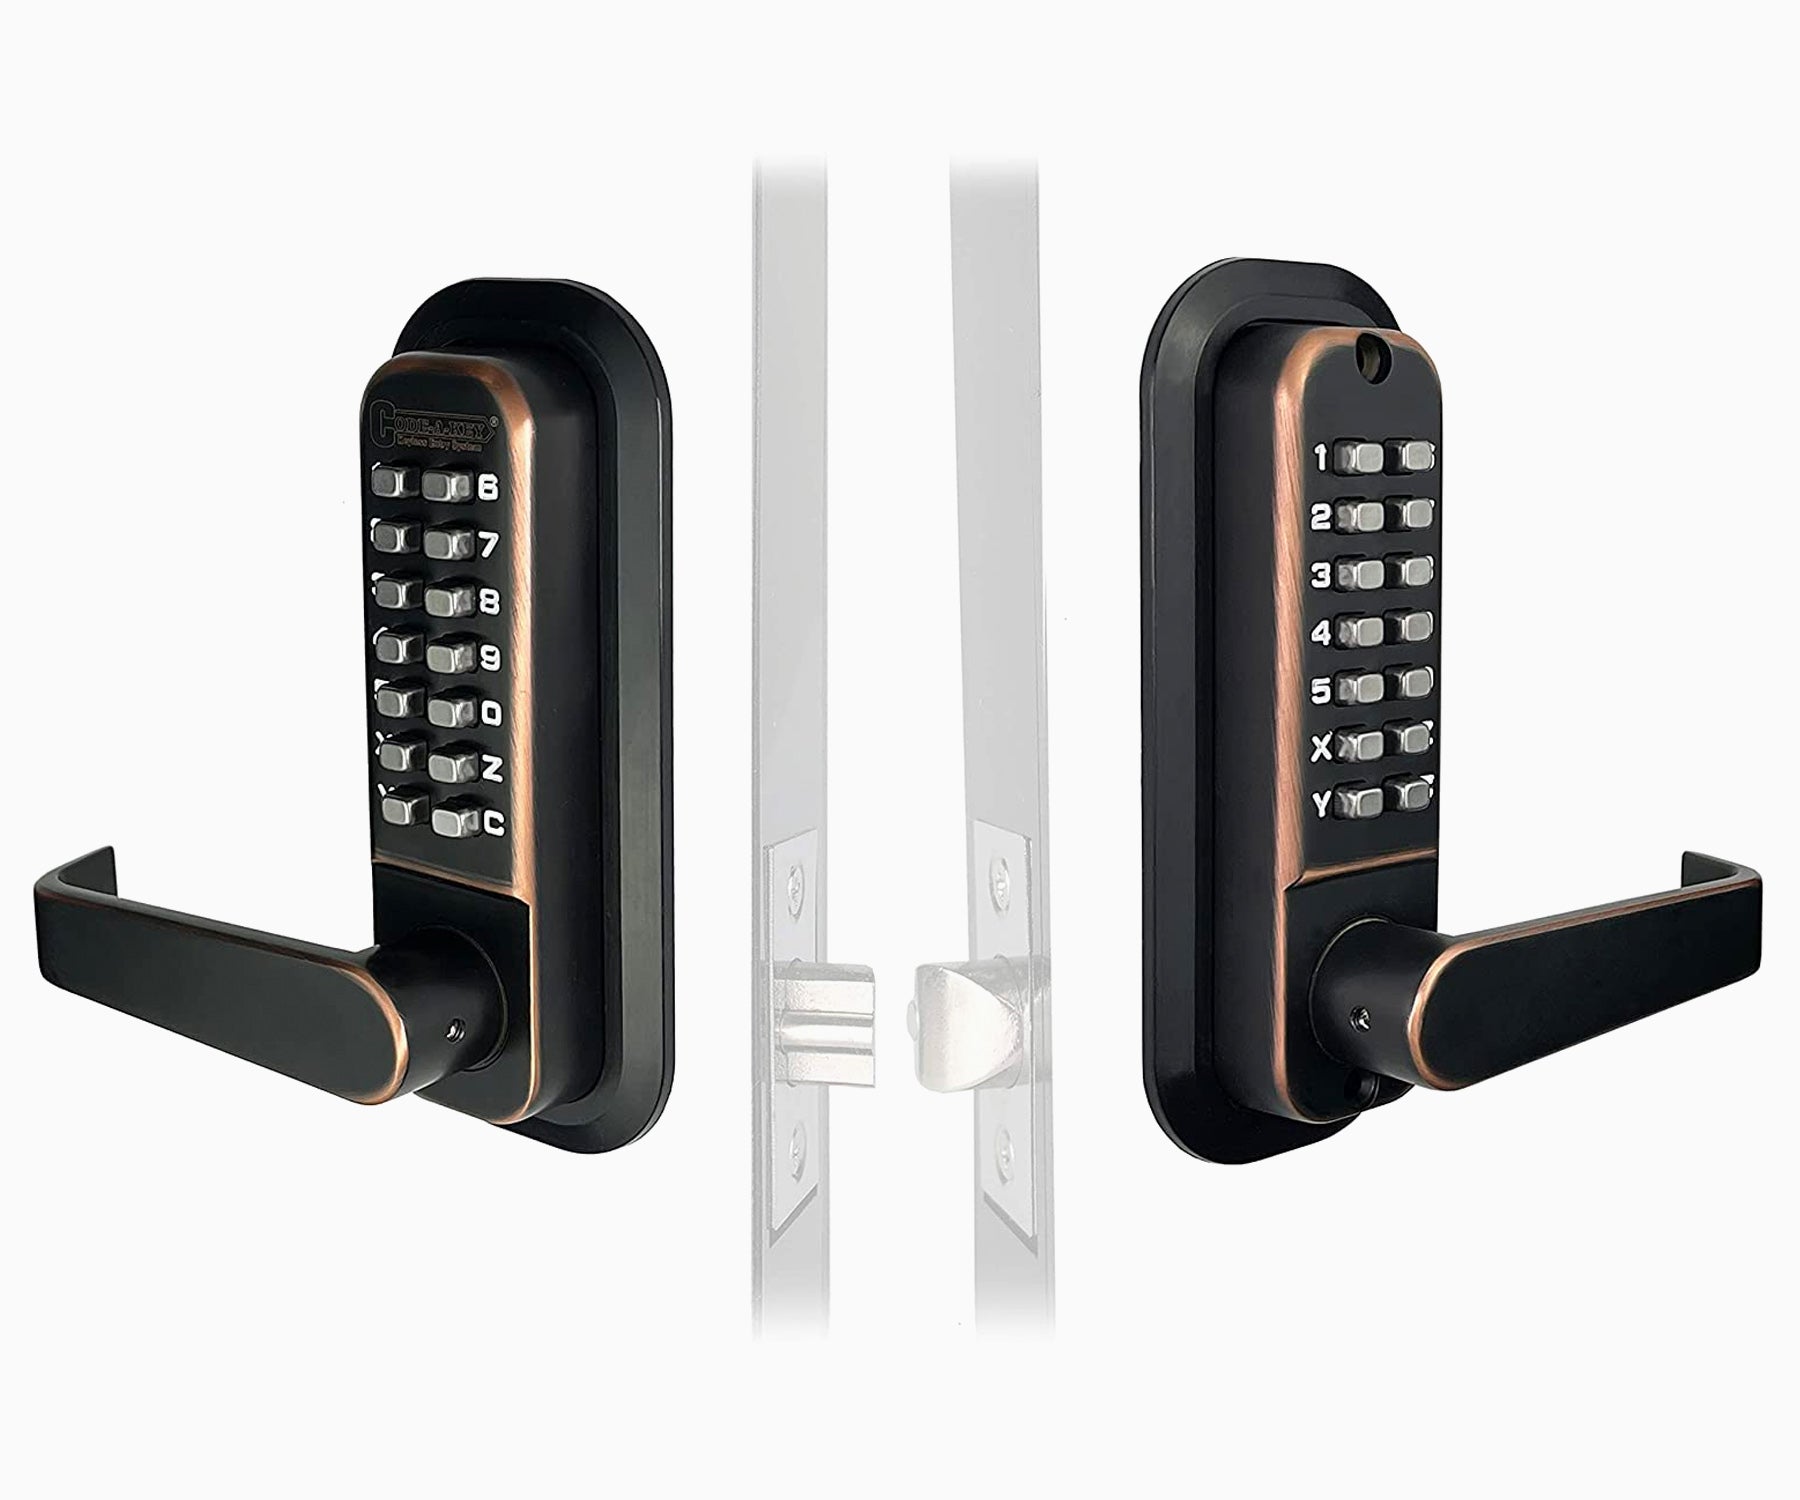 JOUNJIP Mechanical Keyless Combination Latch Door Lock - Double